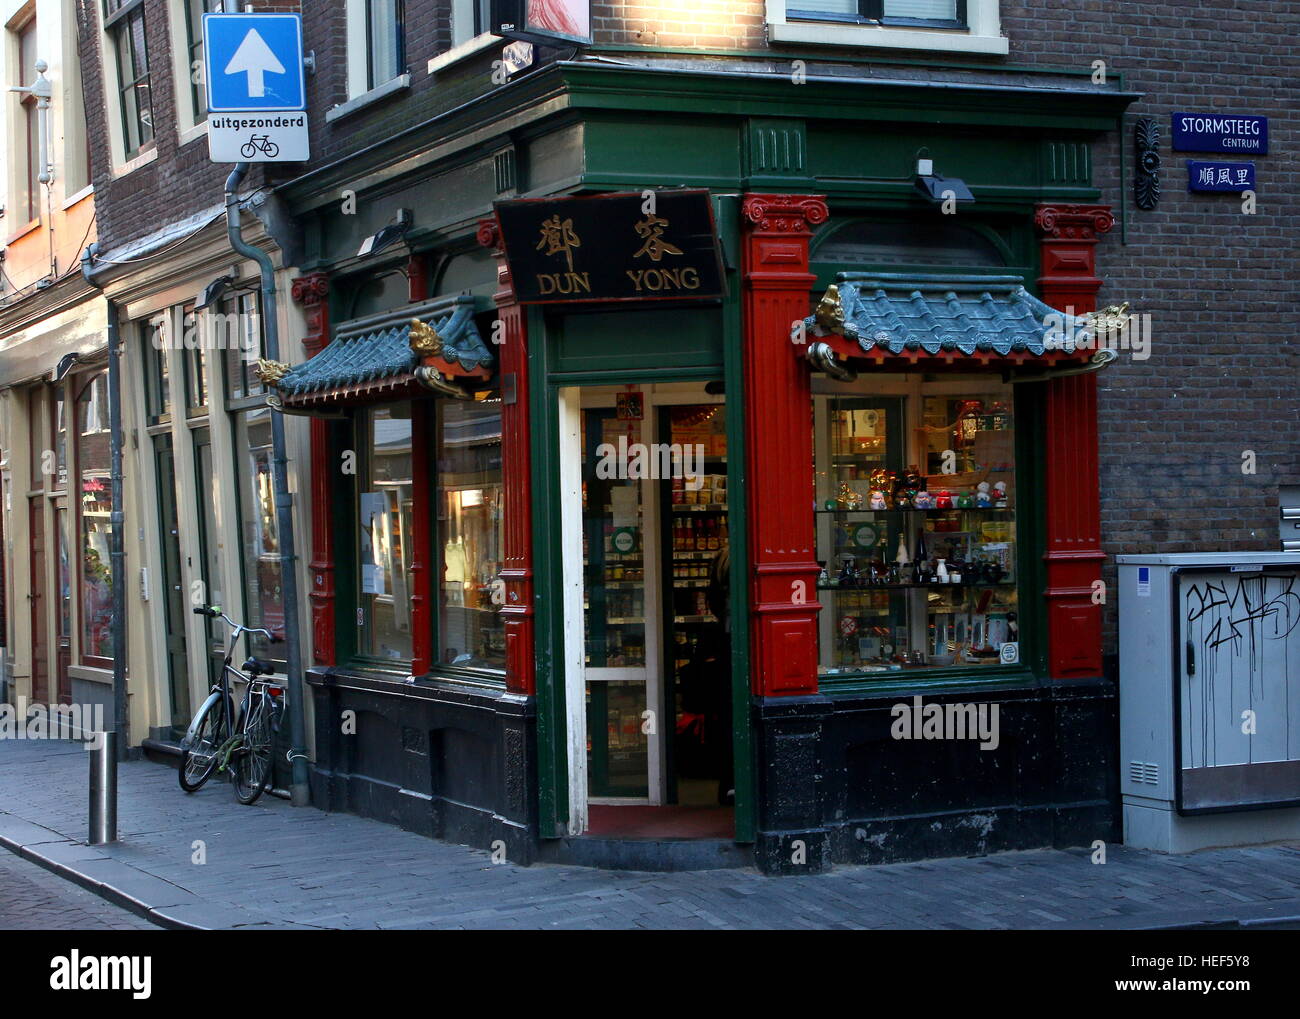 Magasin chinois 'Dun Yong' sur Zeedijk street, quartier chinois d'Amsterdam - Vieux Quartier nautique à Amsterdam, Pays-Bas. Banque D'Images